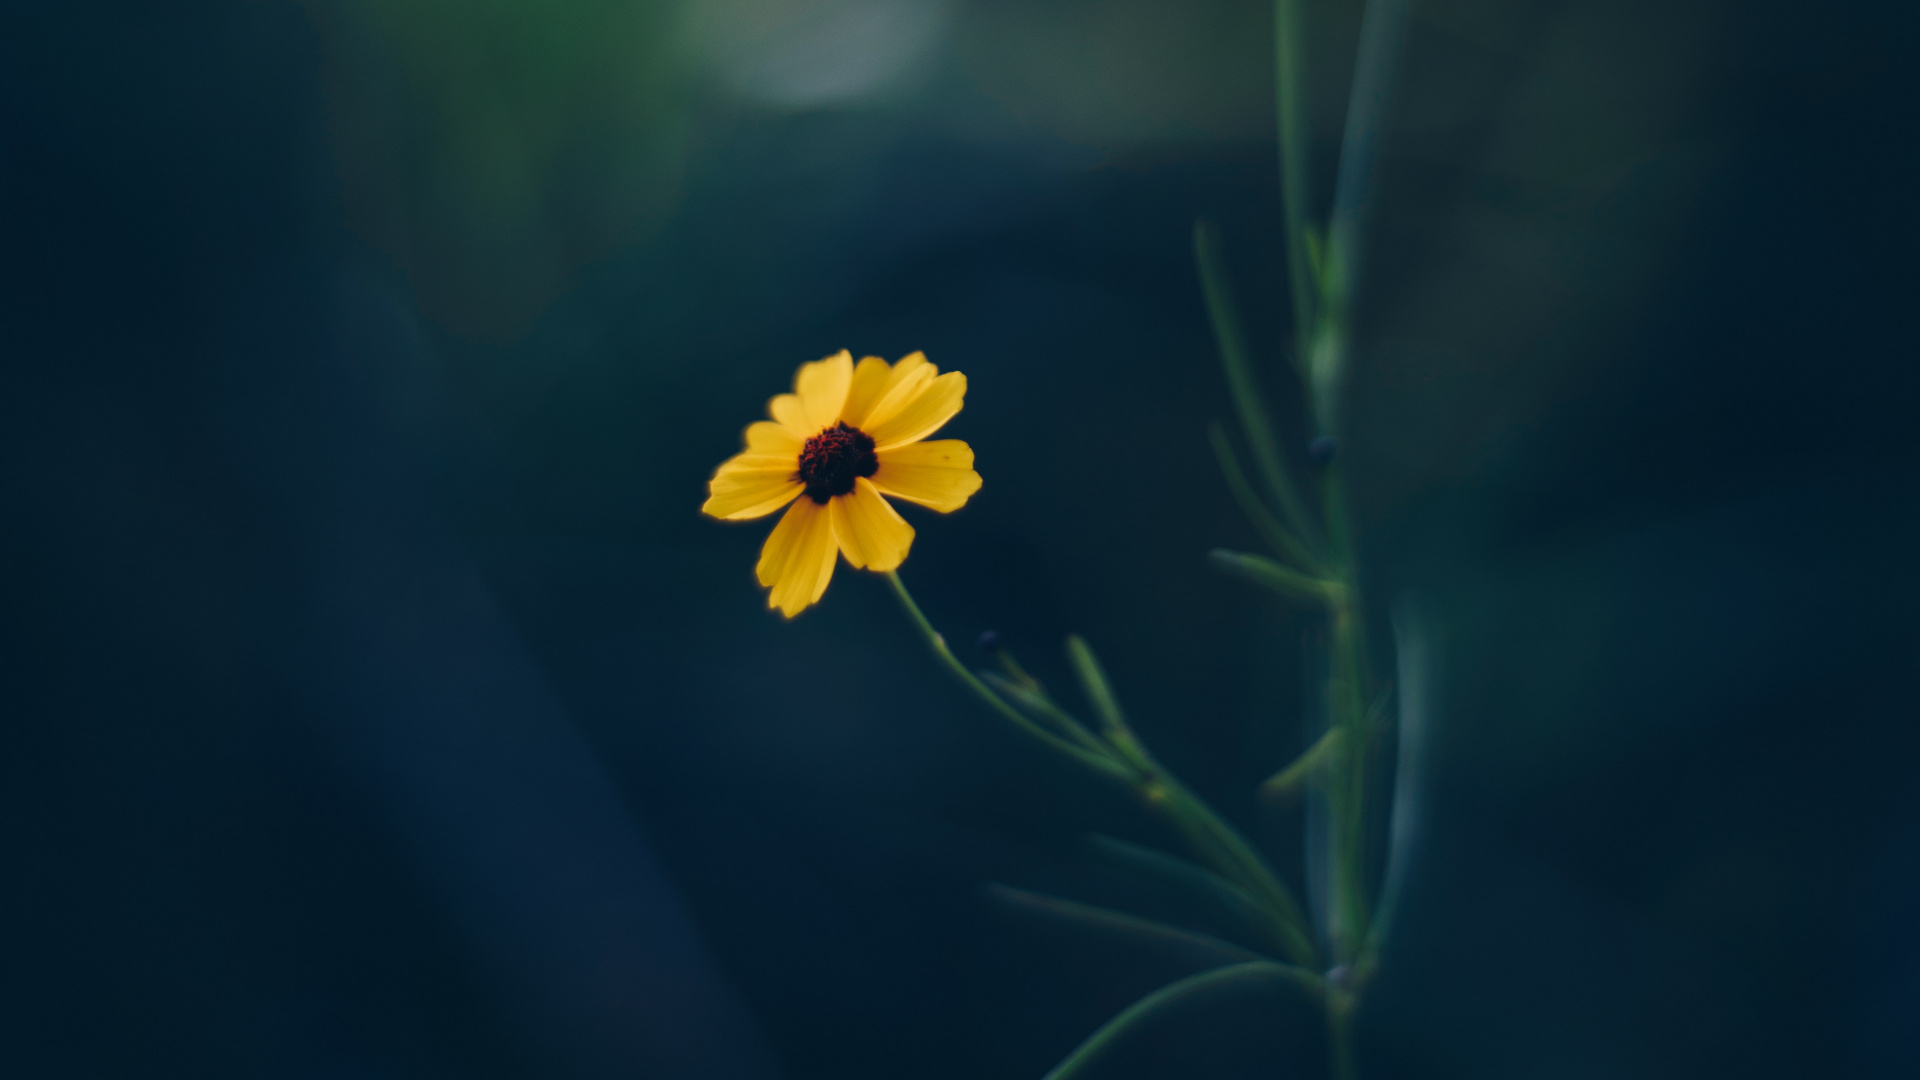 Yellow Flower in Tilt Shift Lens. Wallpaper in 1920x1080 Resolution